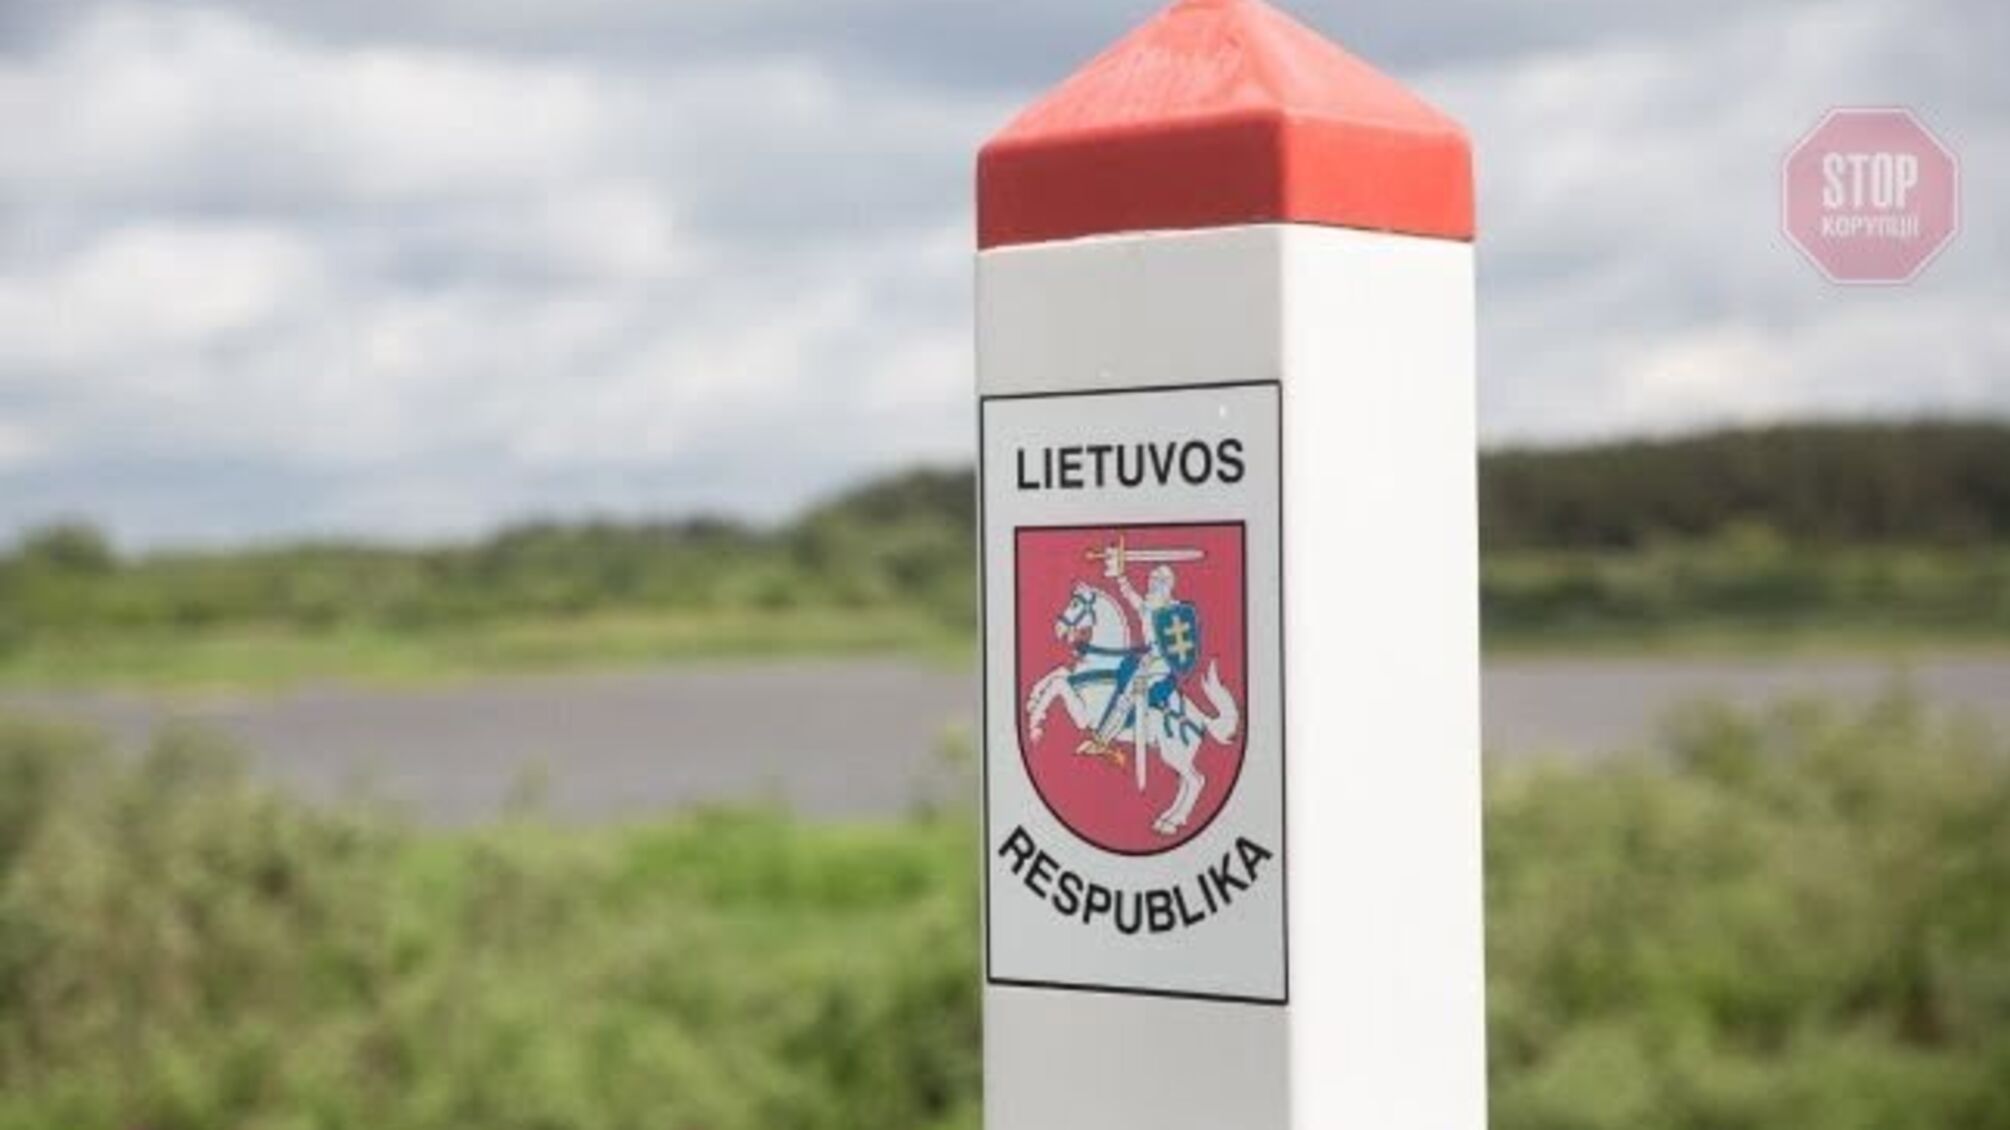 Понад 160 осіб за добу: потік мігрантів з Білорусі до Литви не зменшується